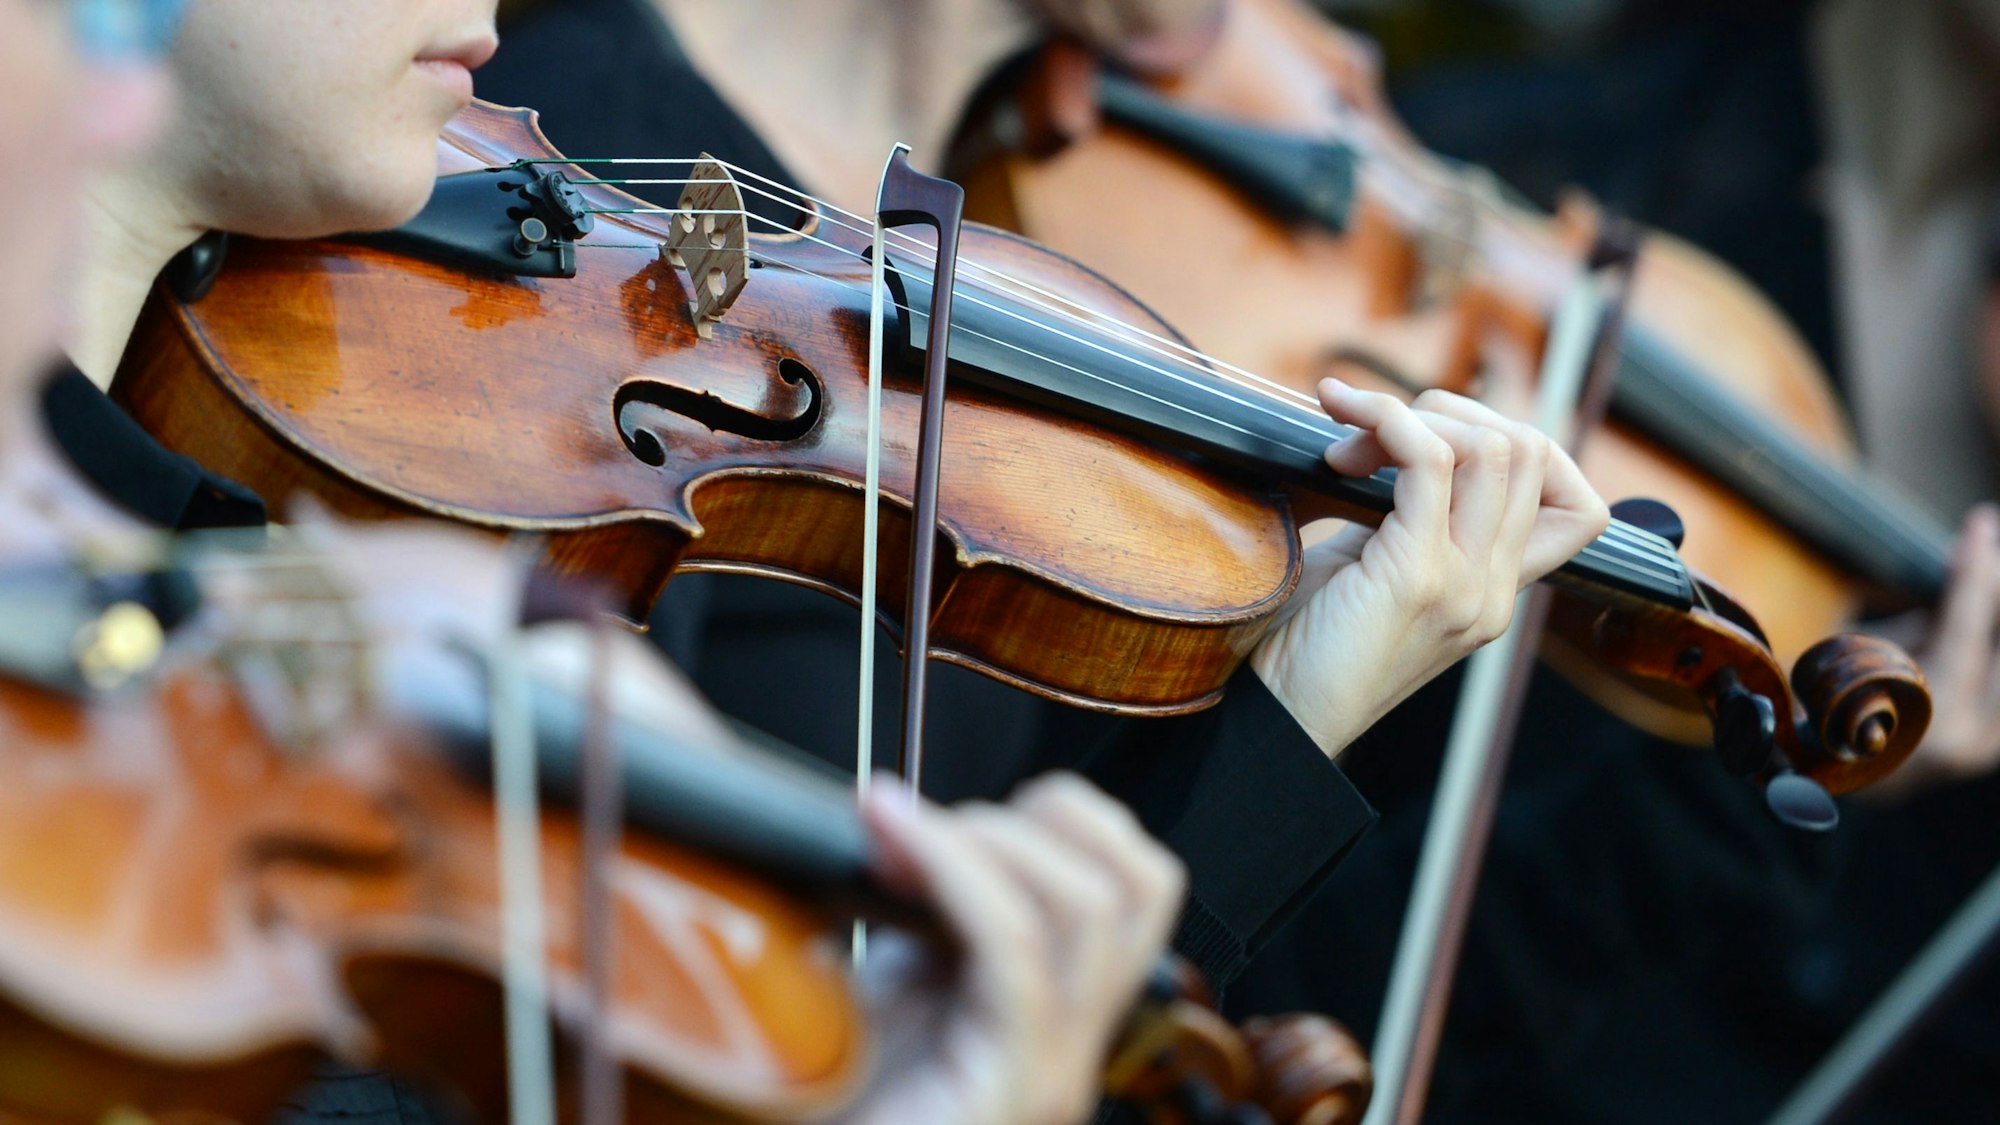 Der Geigenmusik widmete Jacques Offenbach eine Operette in Gestalt eines geheimnisvollen Spielers in der Bretagne.